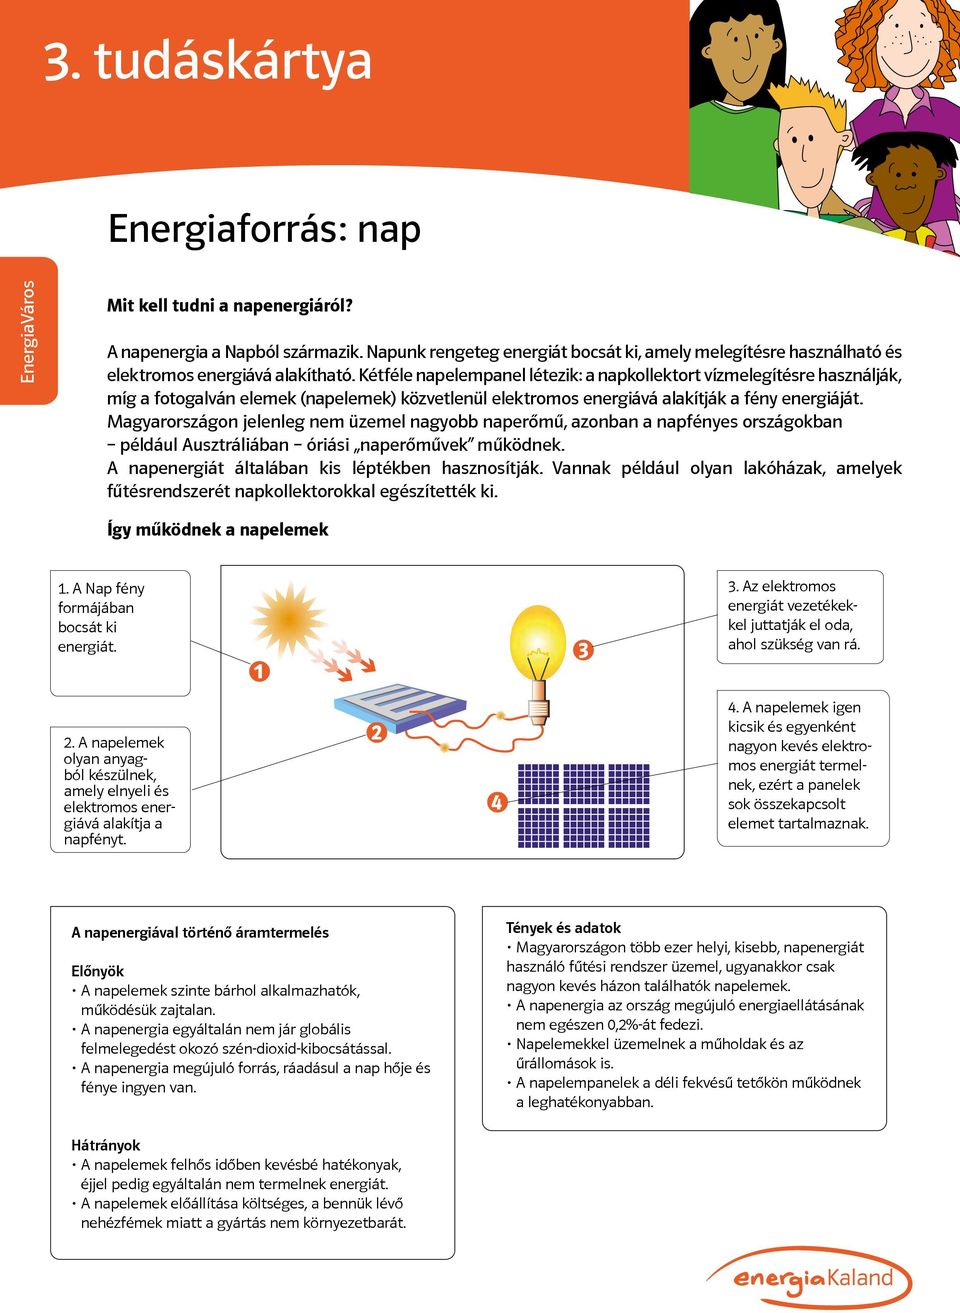 Magyarországon jelenleg nem üzemel nagyobb naperőmű, azonban a napfényes országokban például Ausztráliában óriási naperőművek működnek. A napenergiát általában kis léptékben hasznosítják.